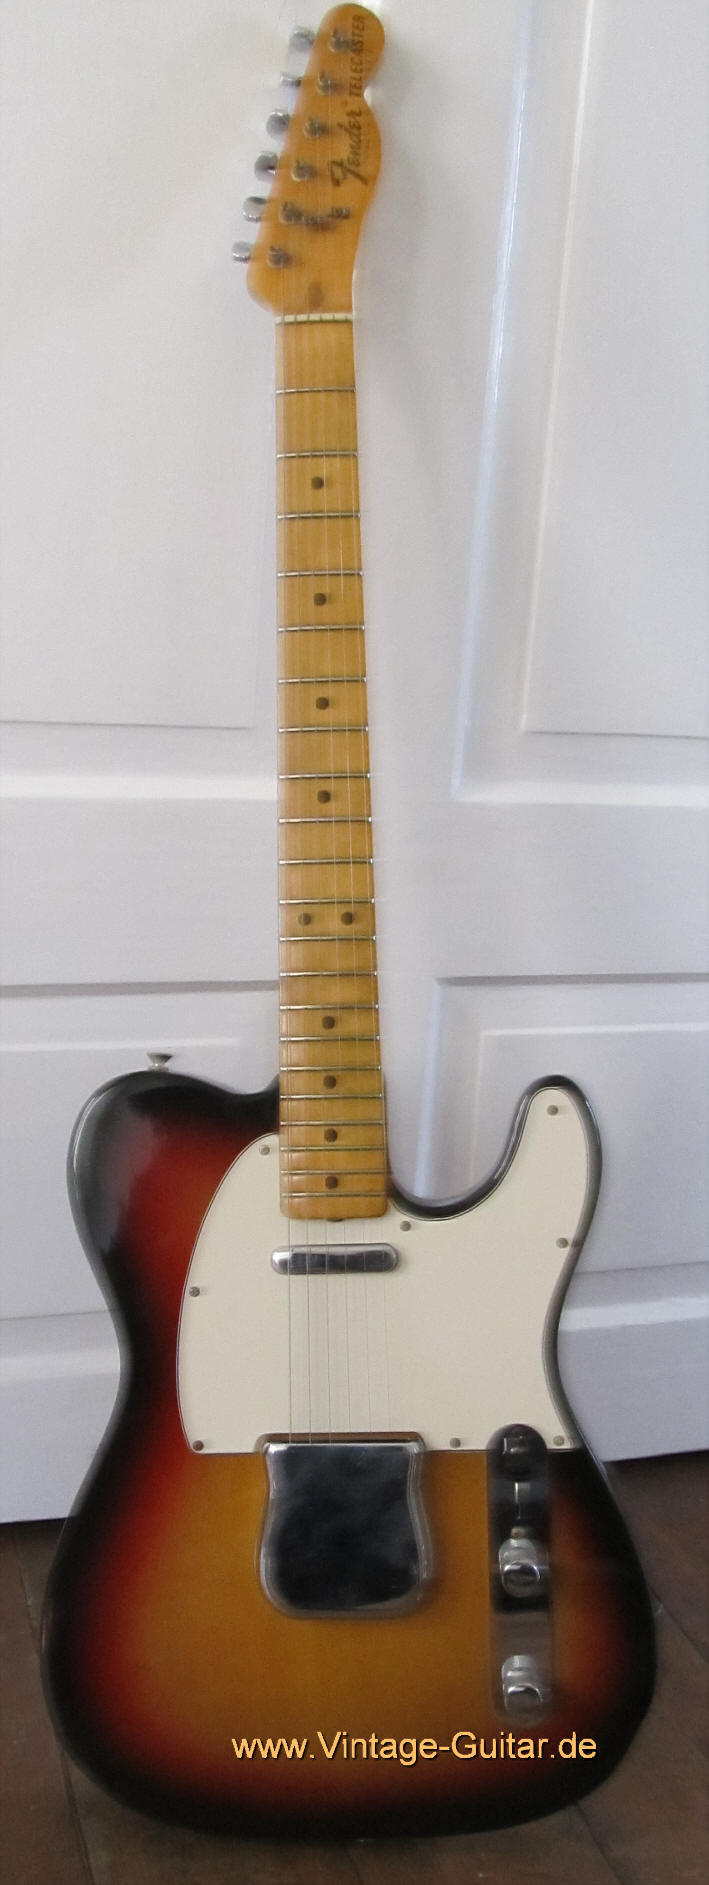 Fender Telecaster 1975 sunburst.jpg